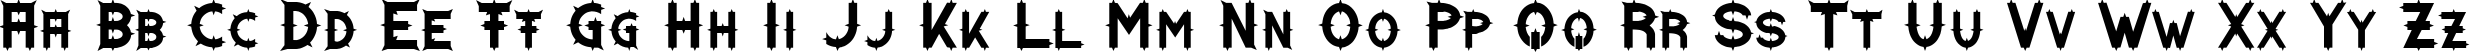 Пример написания английского алфавита шрифтом Dornen